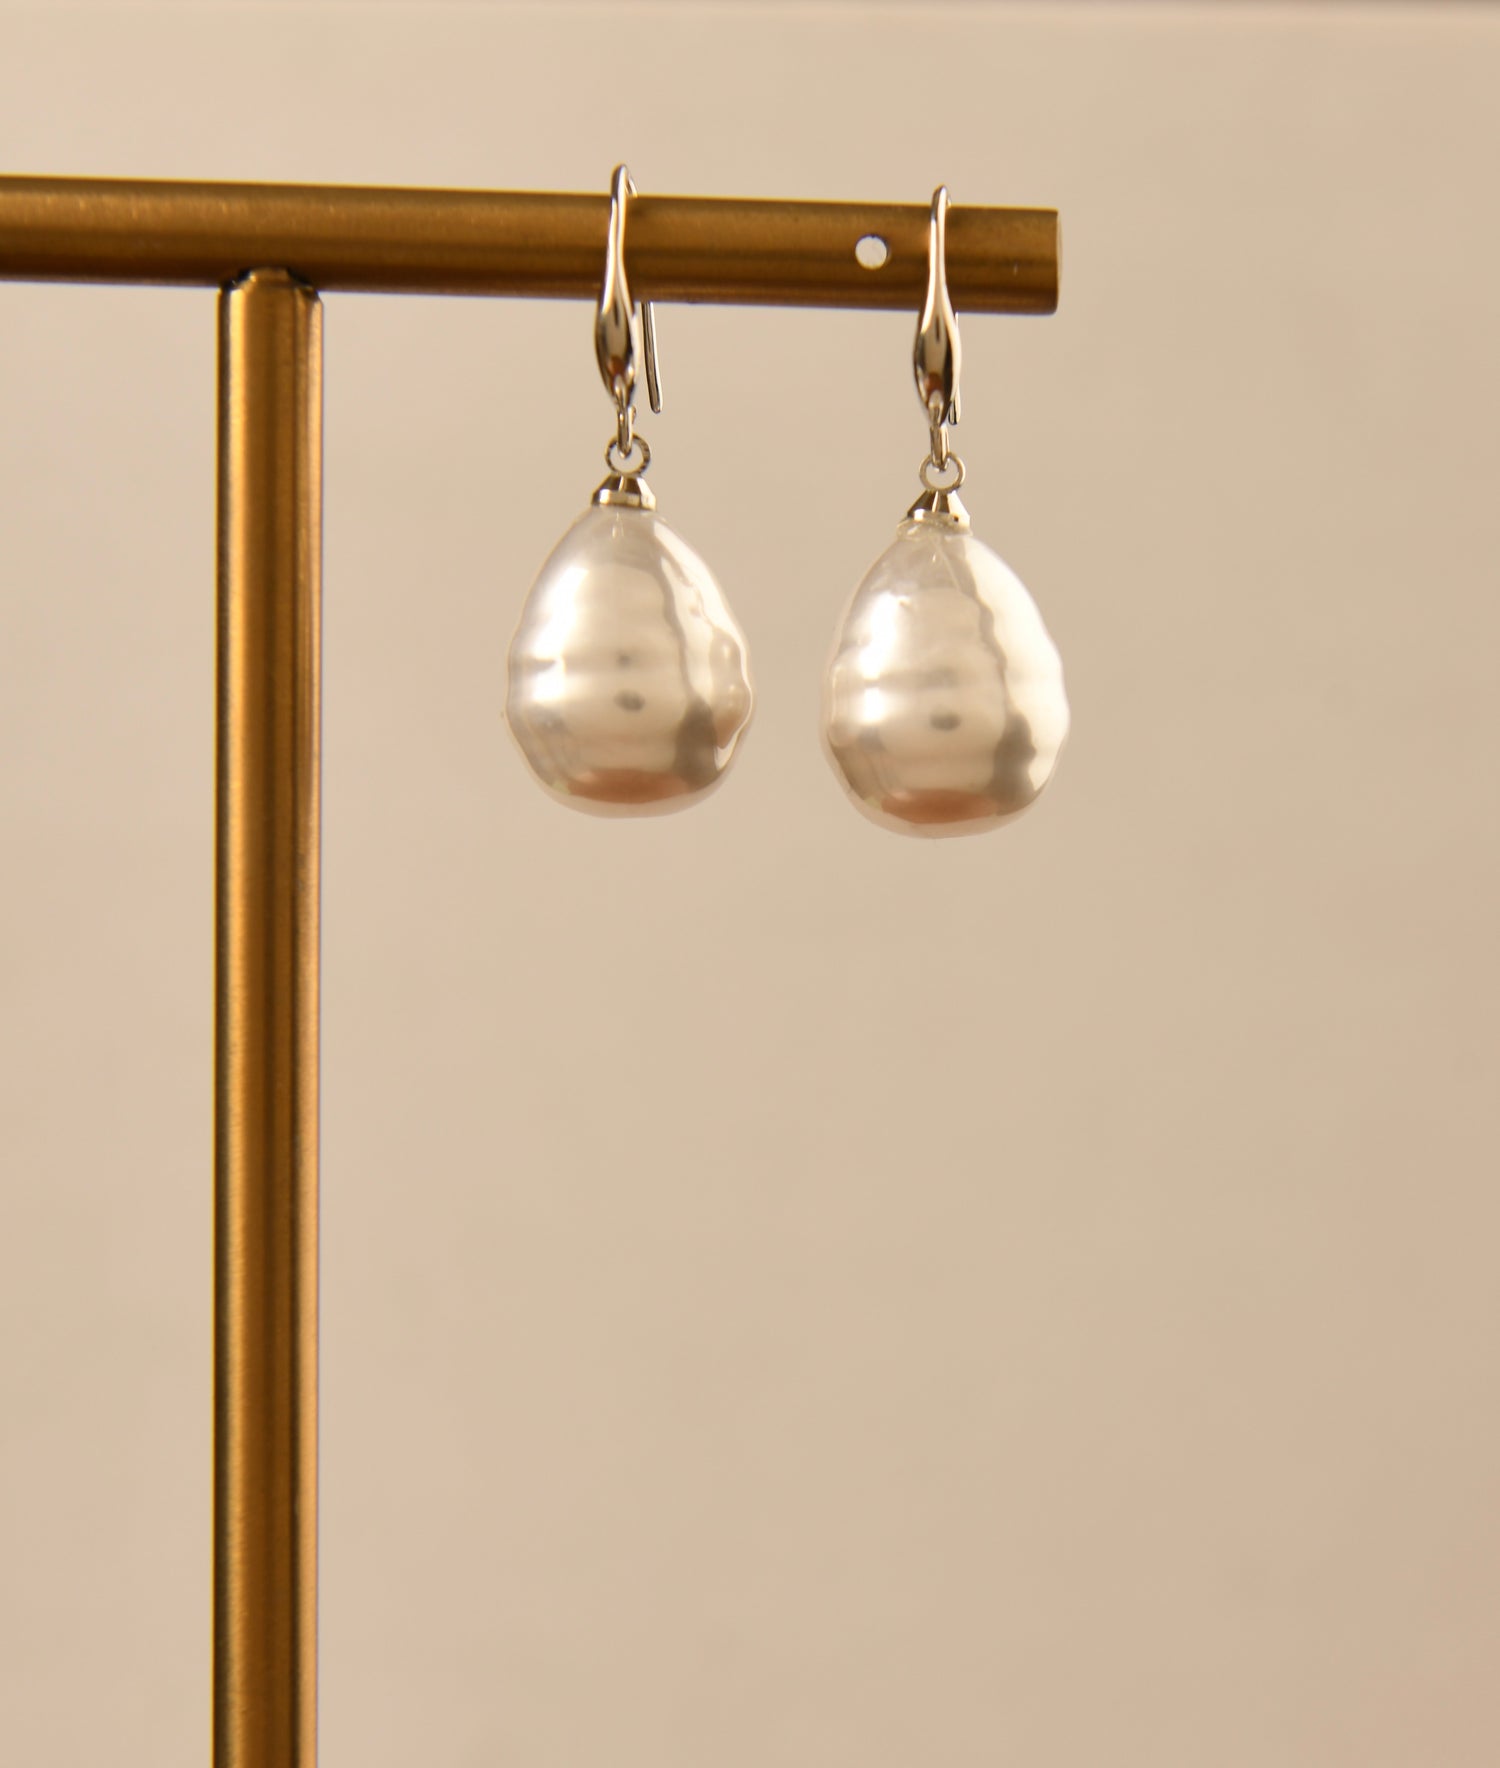 Serenity Pearl Earrings - Paytm Hot Deals